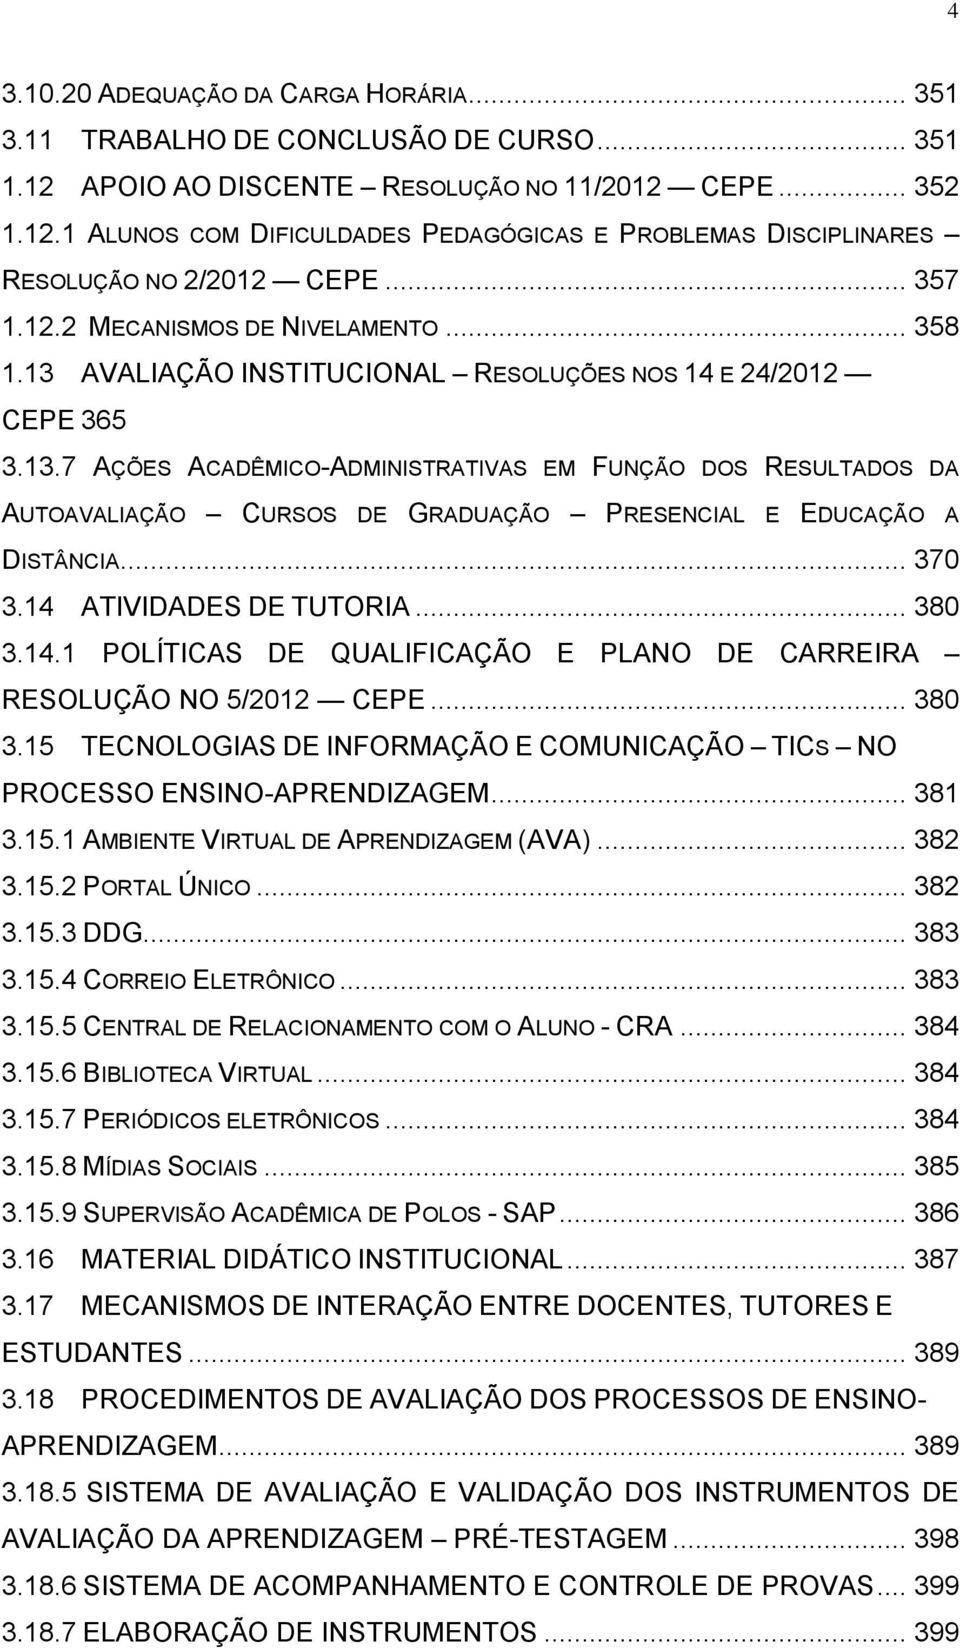 .. 370 3.14 ATIVIDADES DE TUTORIA... 380 3.14.1 POLÍTICAS DE QUALIFICAÇÃO E PLANO DE CARREIRA RESOLUÇÃO NO 5/2012 CEPE... 380 3.15 TECNOLOGIAS DE INFORMAÇÃO E COMUNICAÇÃO TICS NO PROCESSO ENSINO-APRENDIZAGEM.